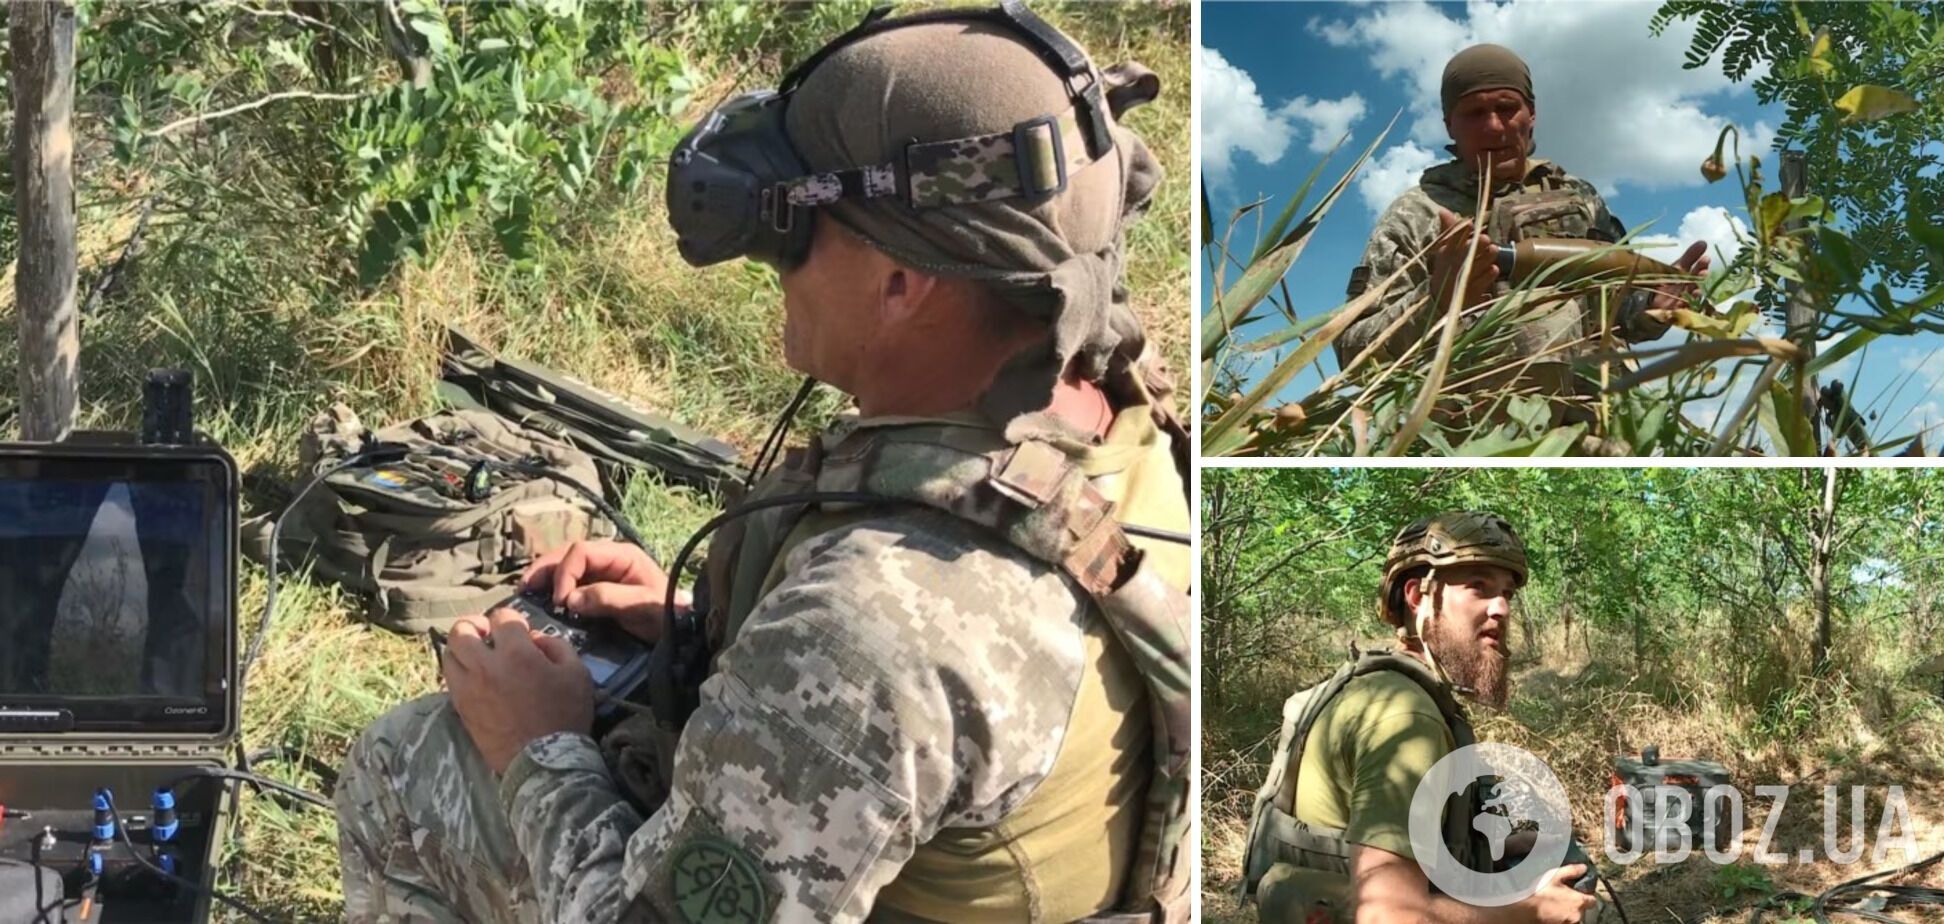 'Це велика наука': як українська аеророзвідка полює на ворога на півдні із 'групами прикриття'. Фото і відео